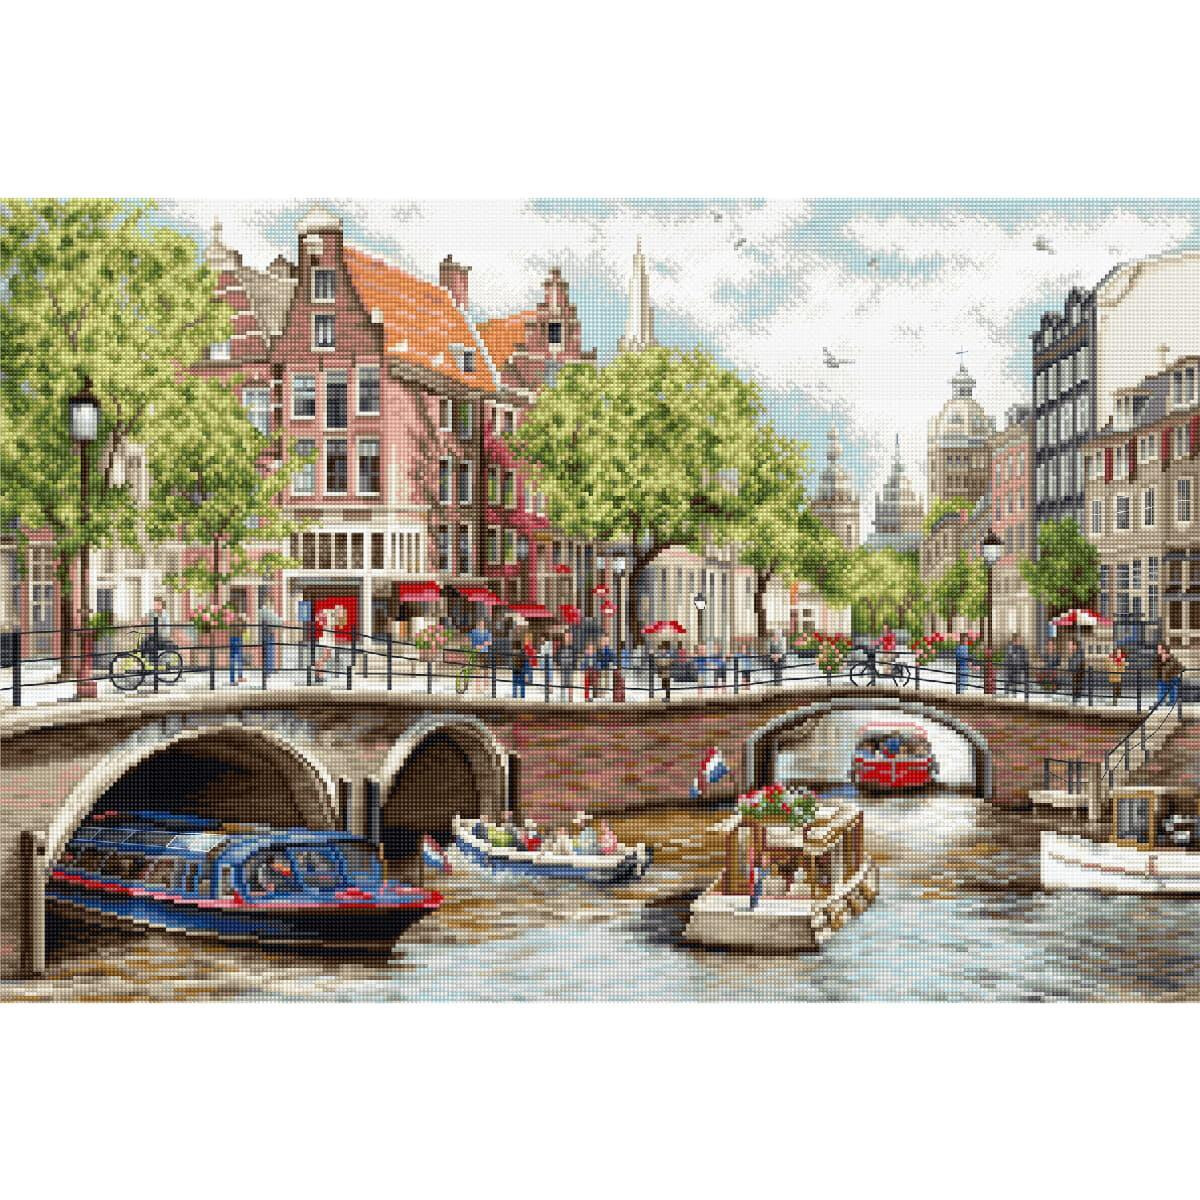 На оживленном канале в Амстердаме изображены живописные...